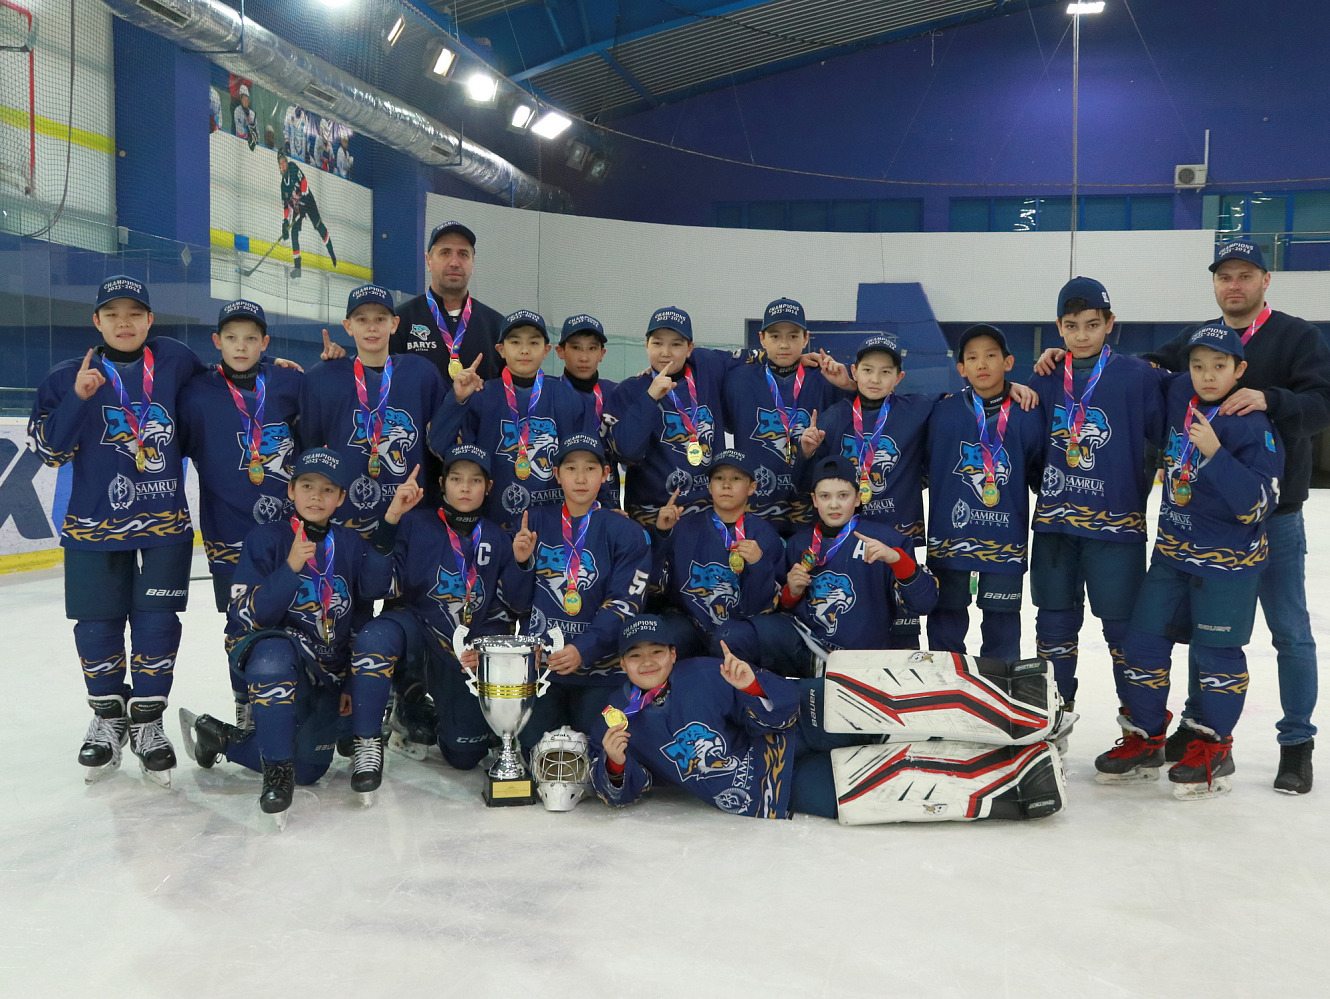 Barys-2012 - Kazakhstan's champion